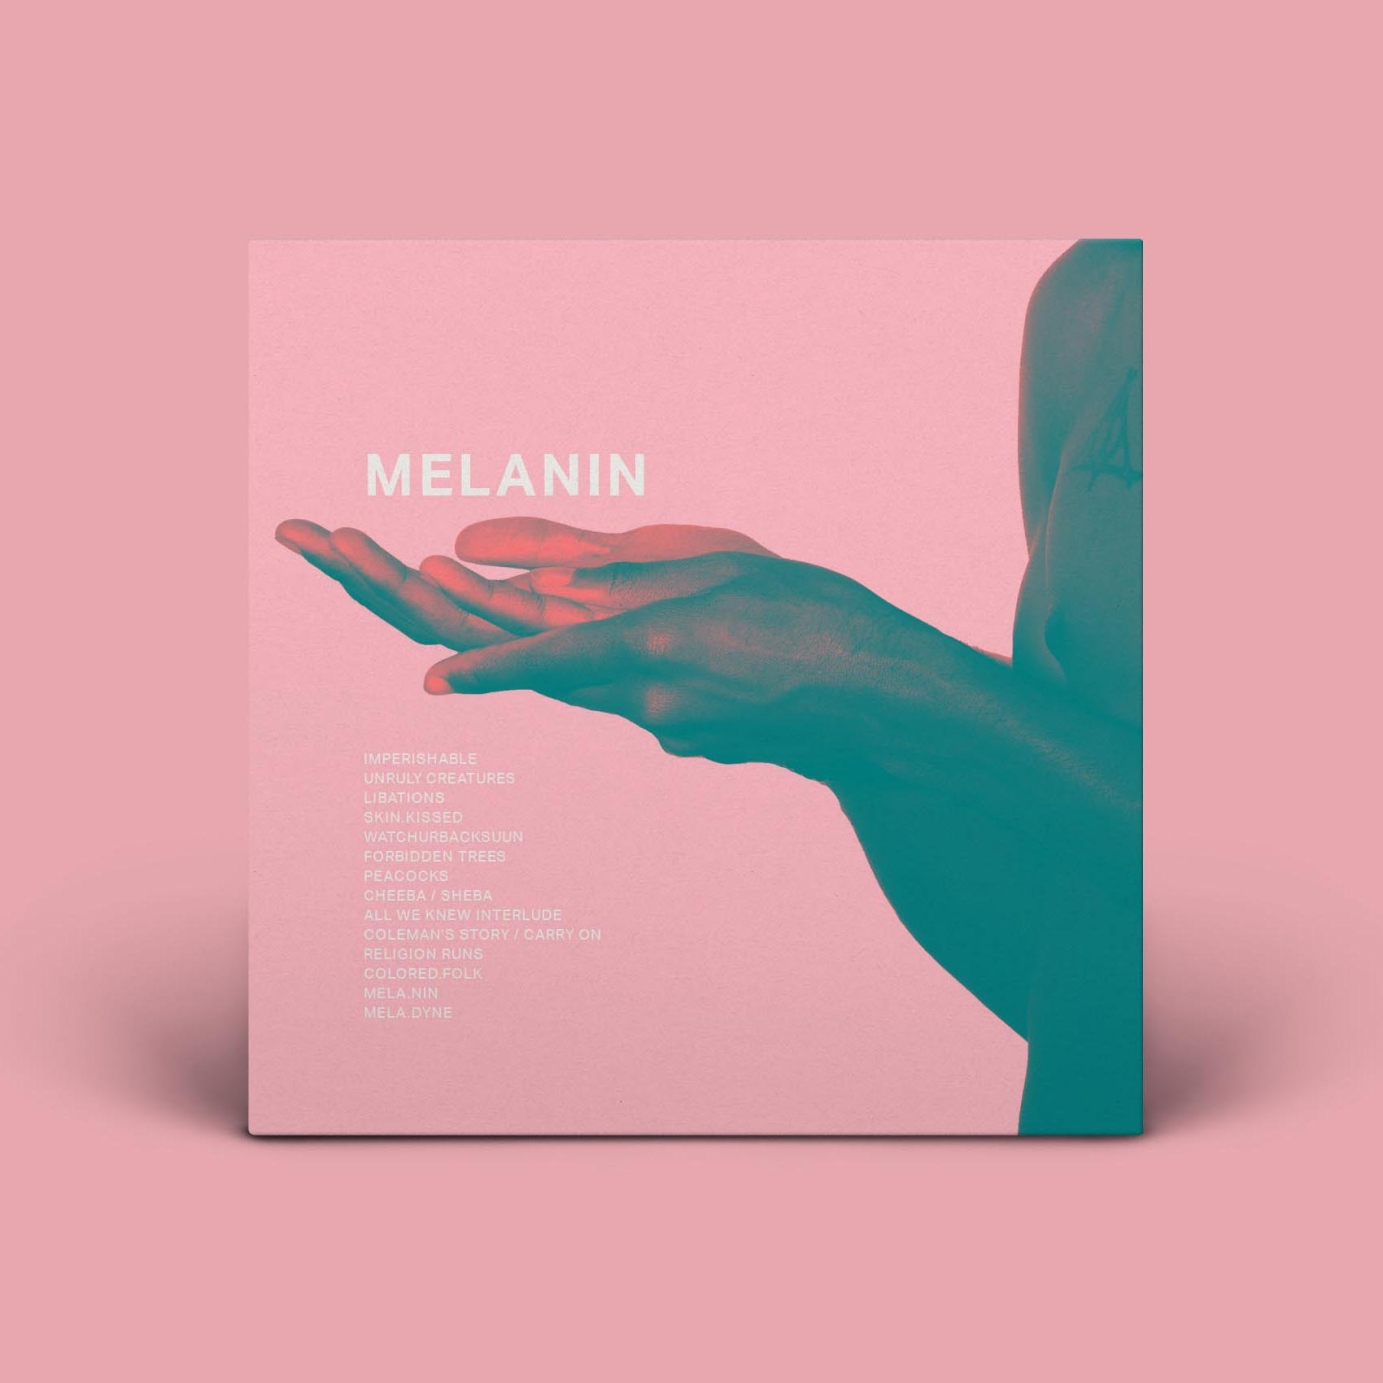 Mela.nin by GOODSTEPH Album Cover Design